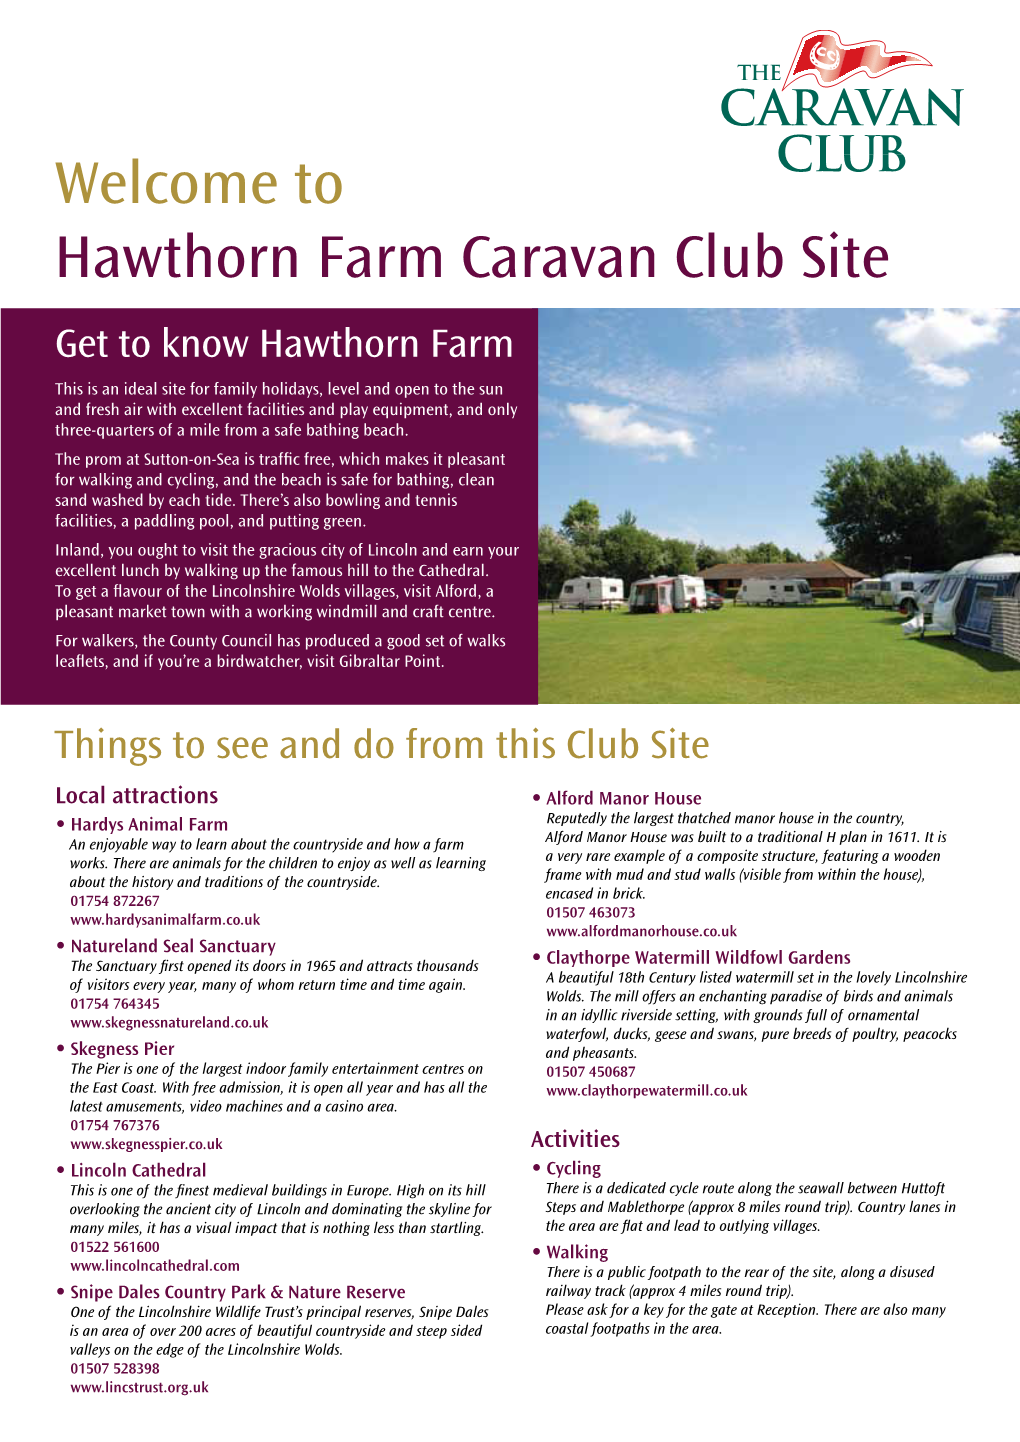 Welcome to Hawthorn Farm Caravan Club Site